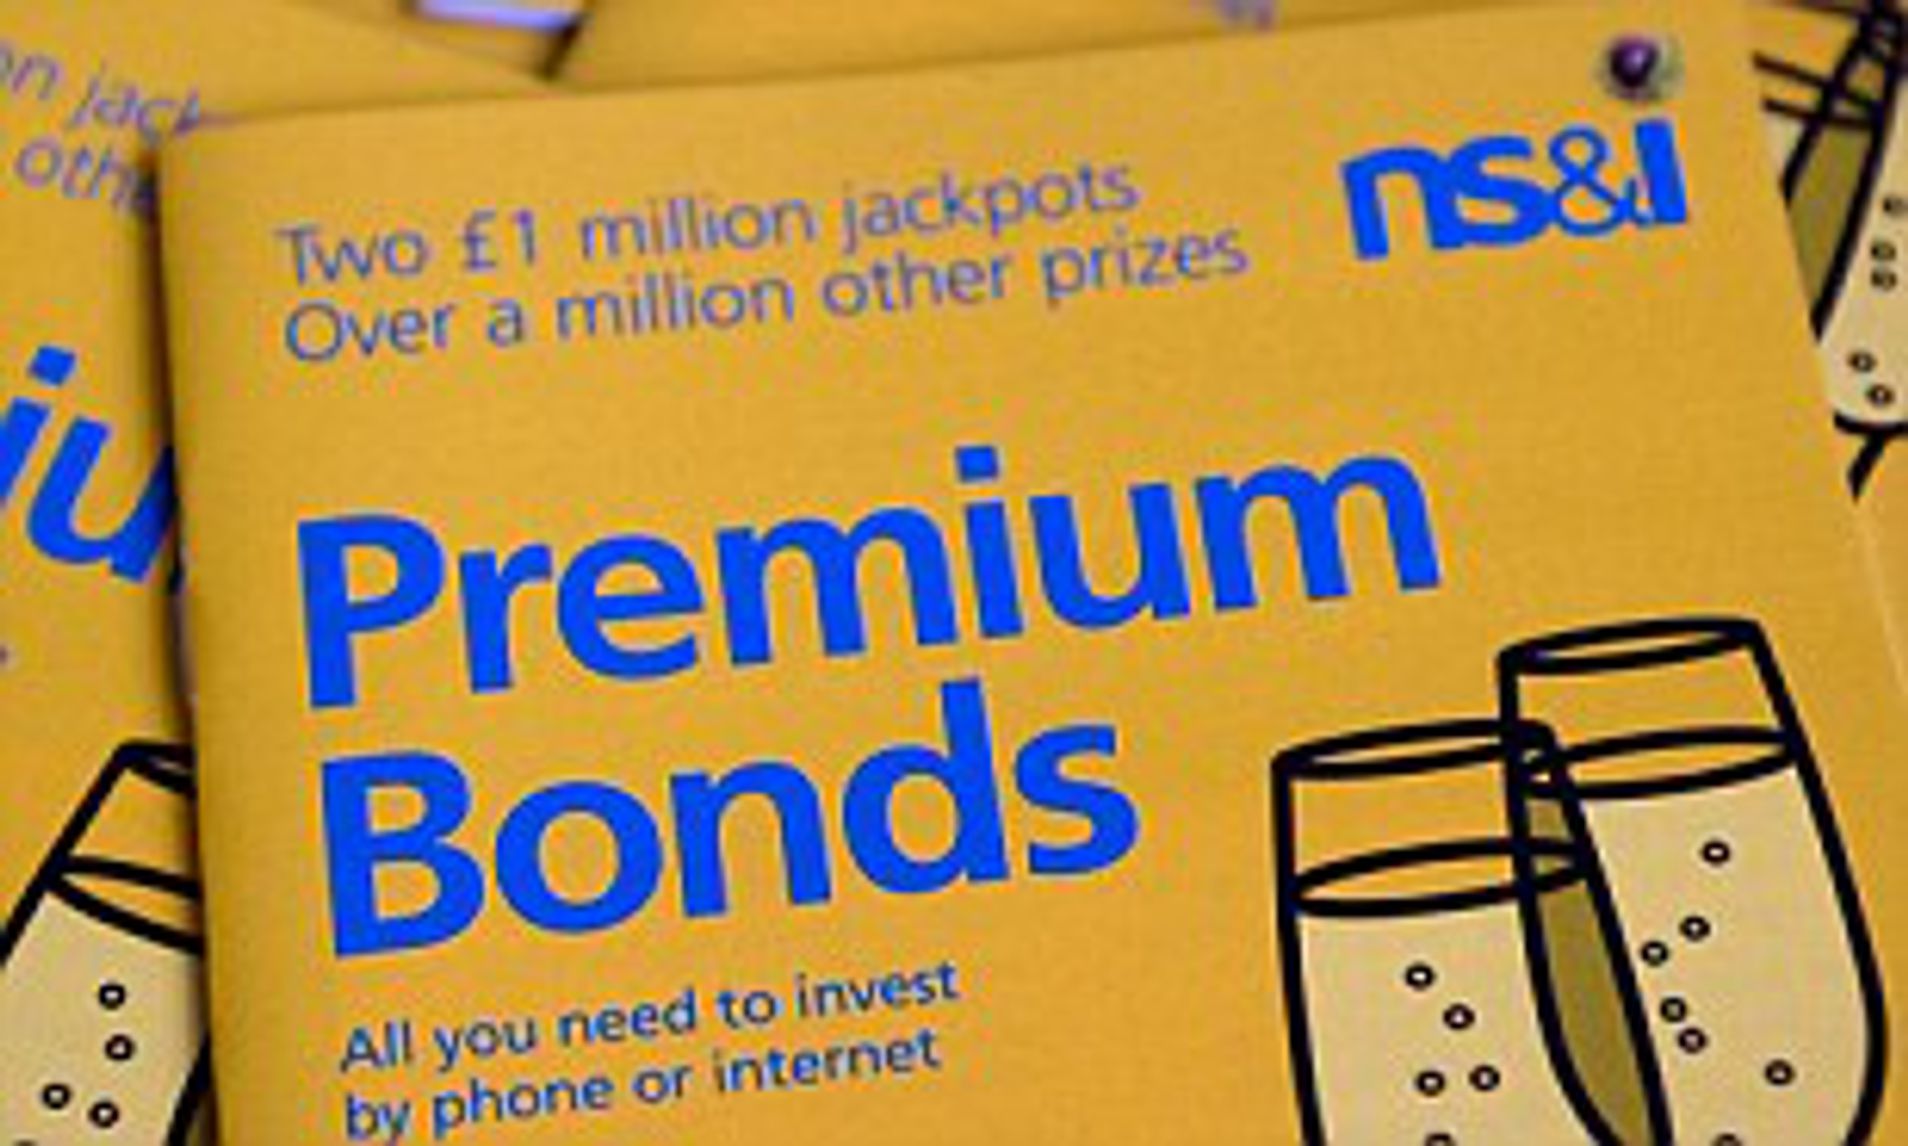 Premium Bonds for Orson